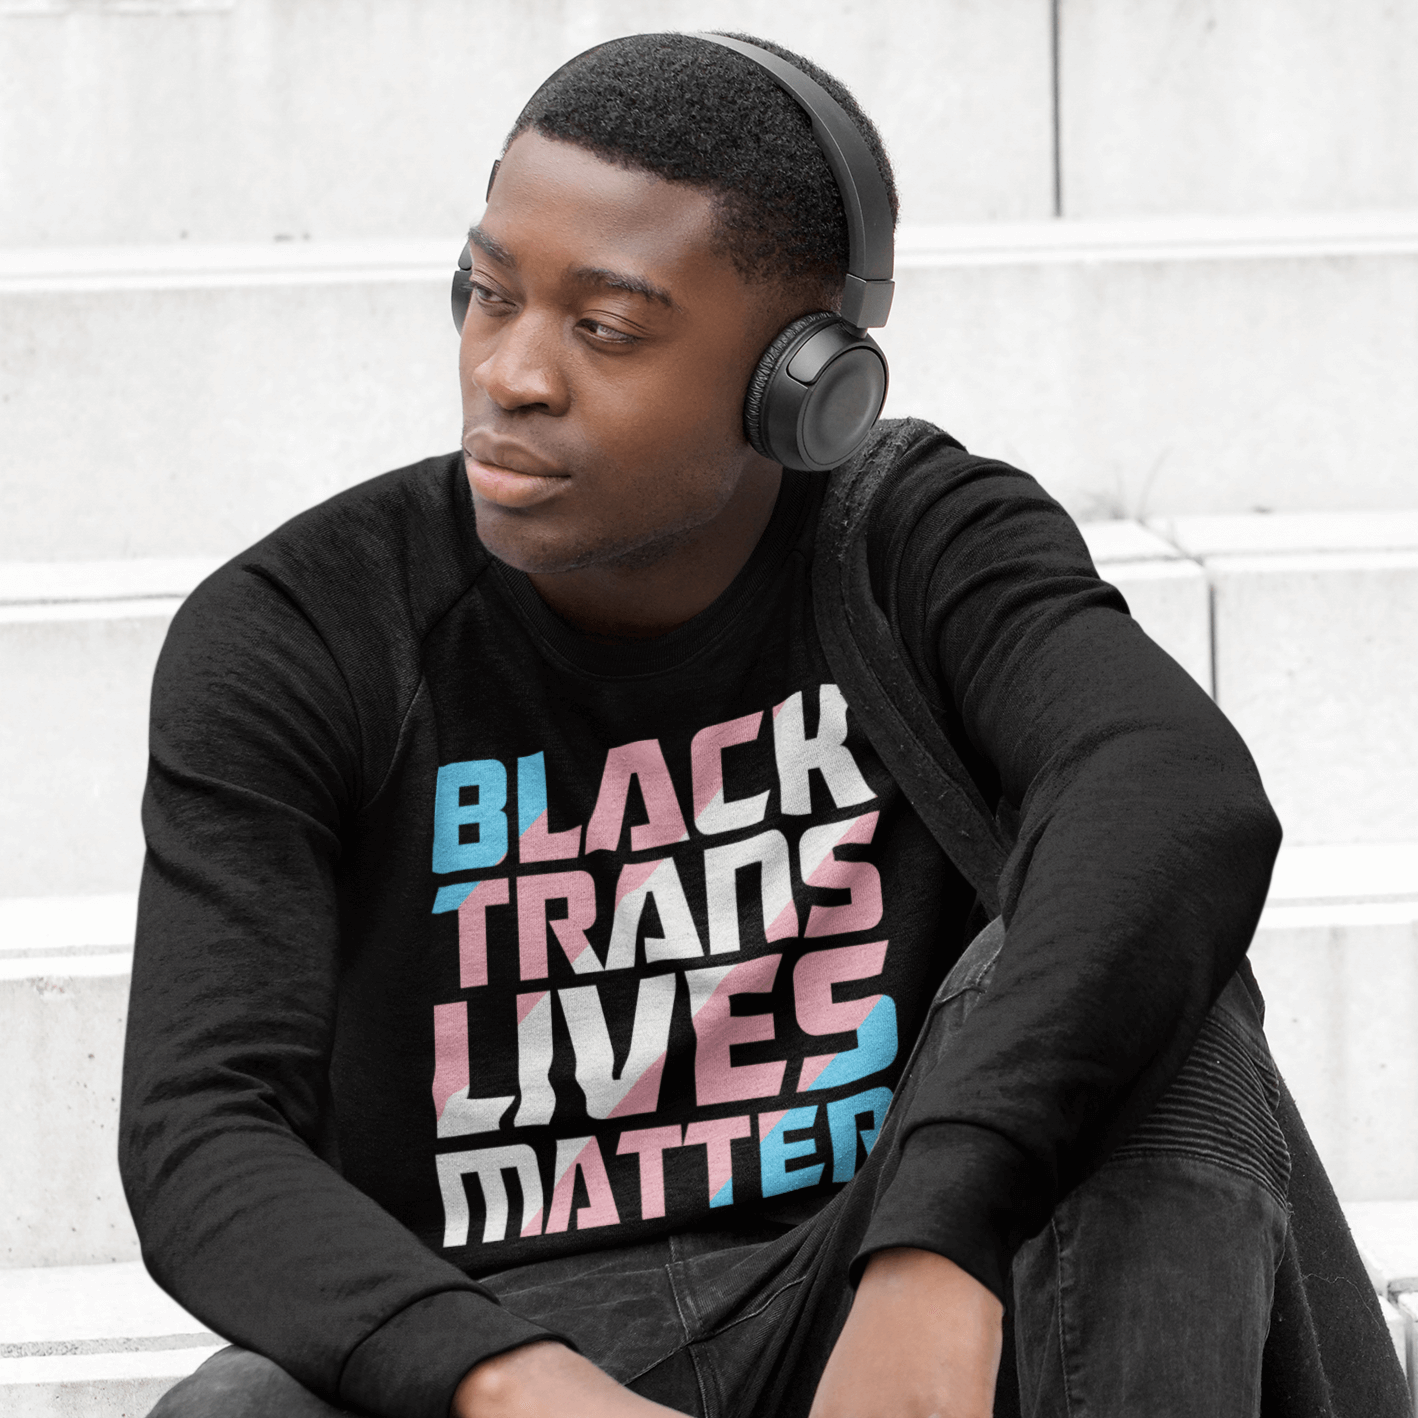 Black Trans Lives Matter | LGBT+ Merch | Transgender Pride Unisex Sweatshirt